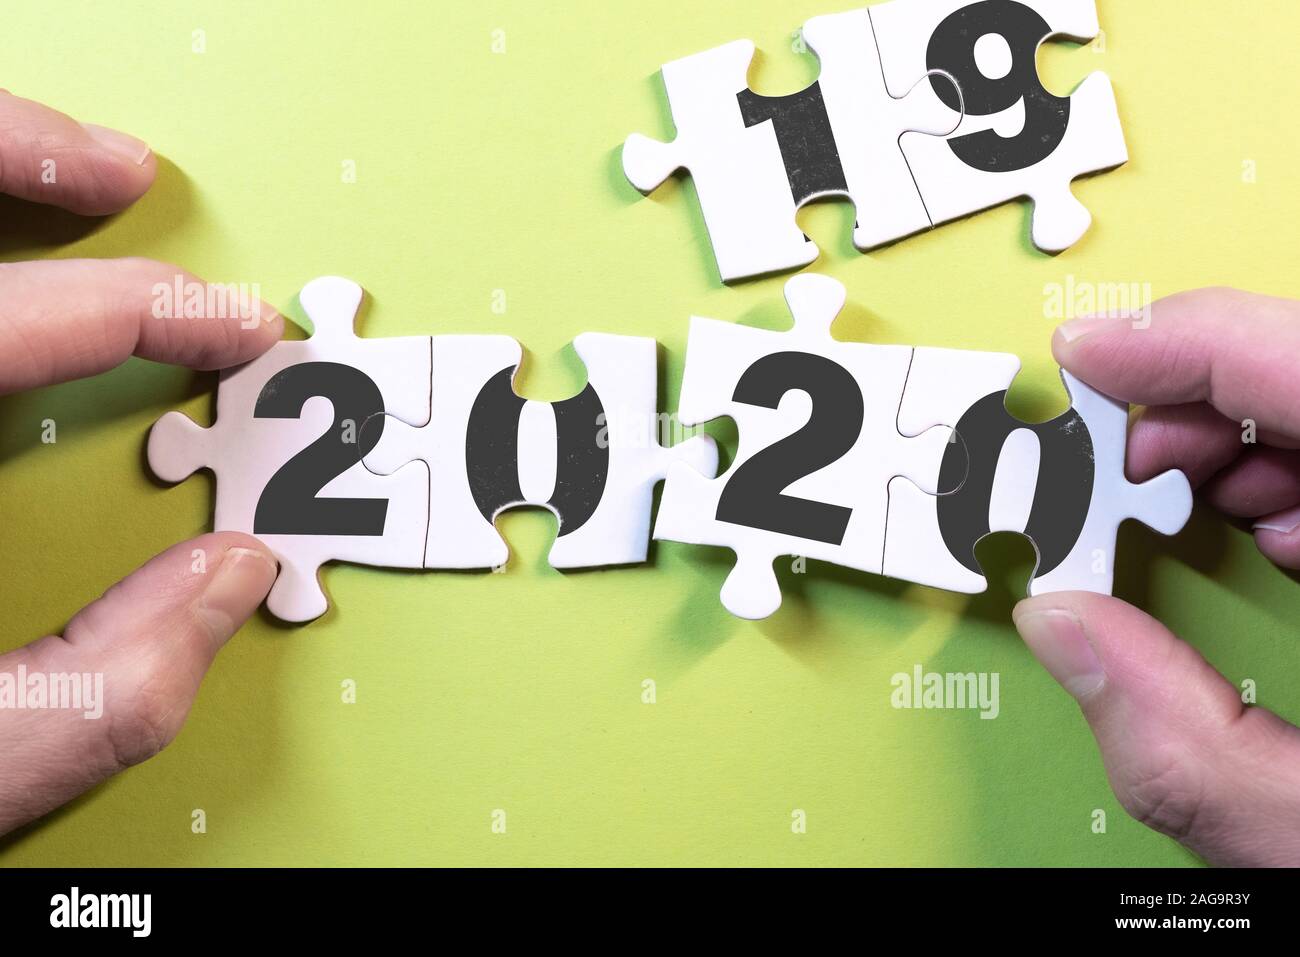 Año nuevo concepto con vista superior de manos la sustitución de las piezas del rompecabezas con 2019 a 2020 Foto de stock